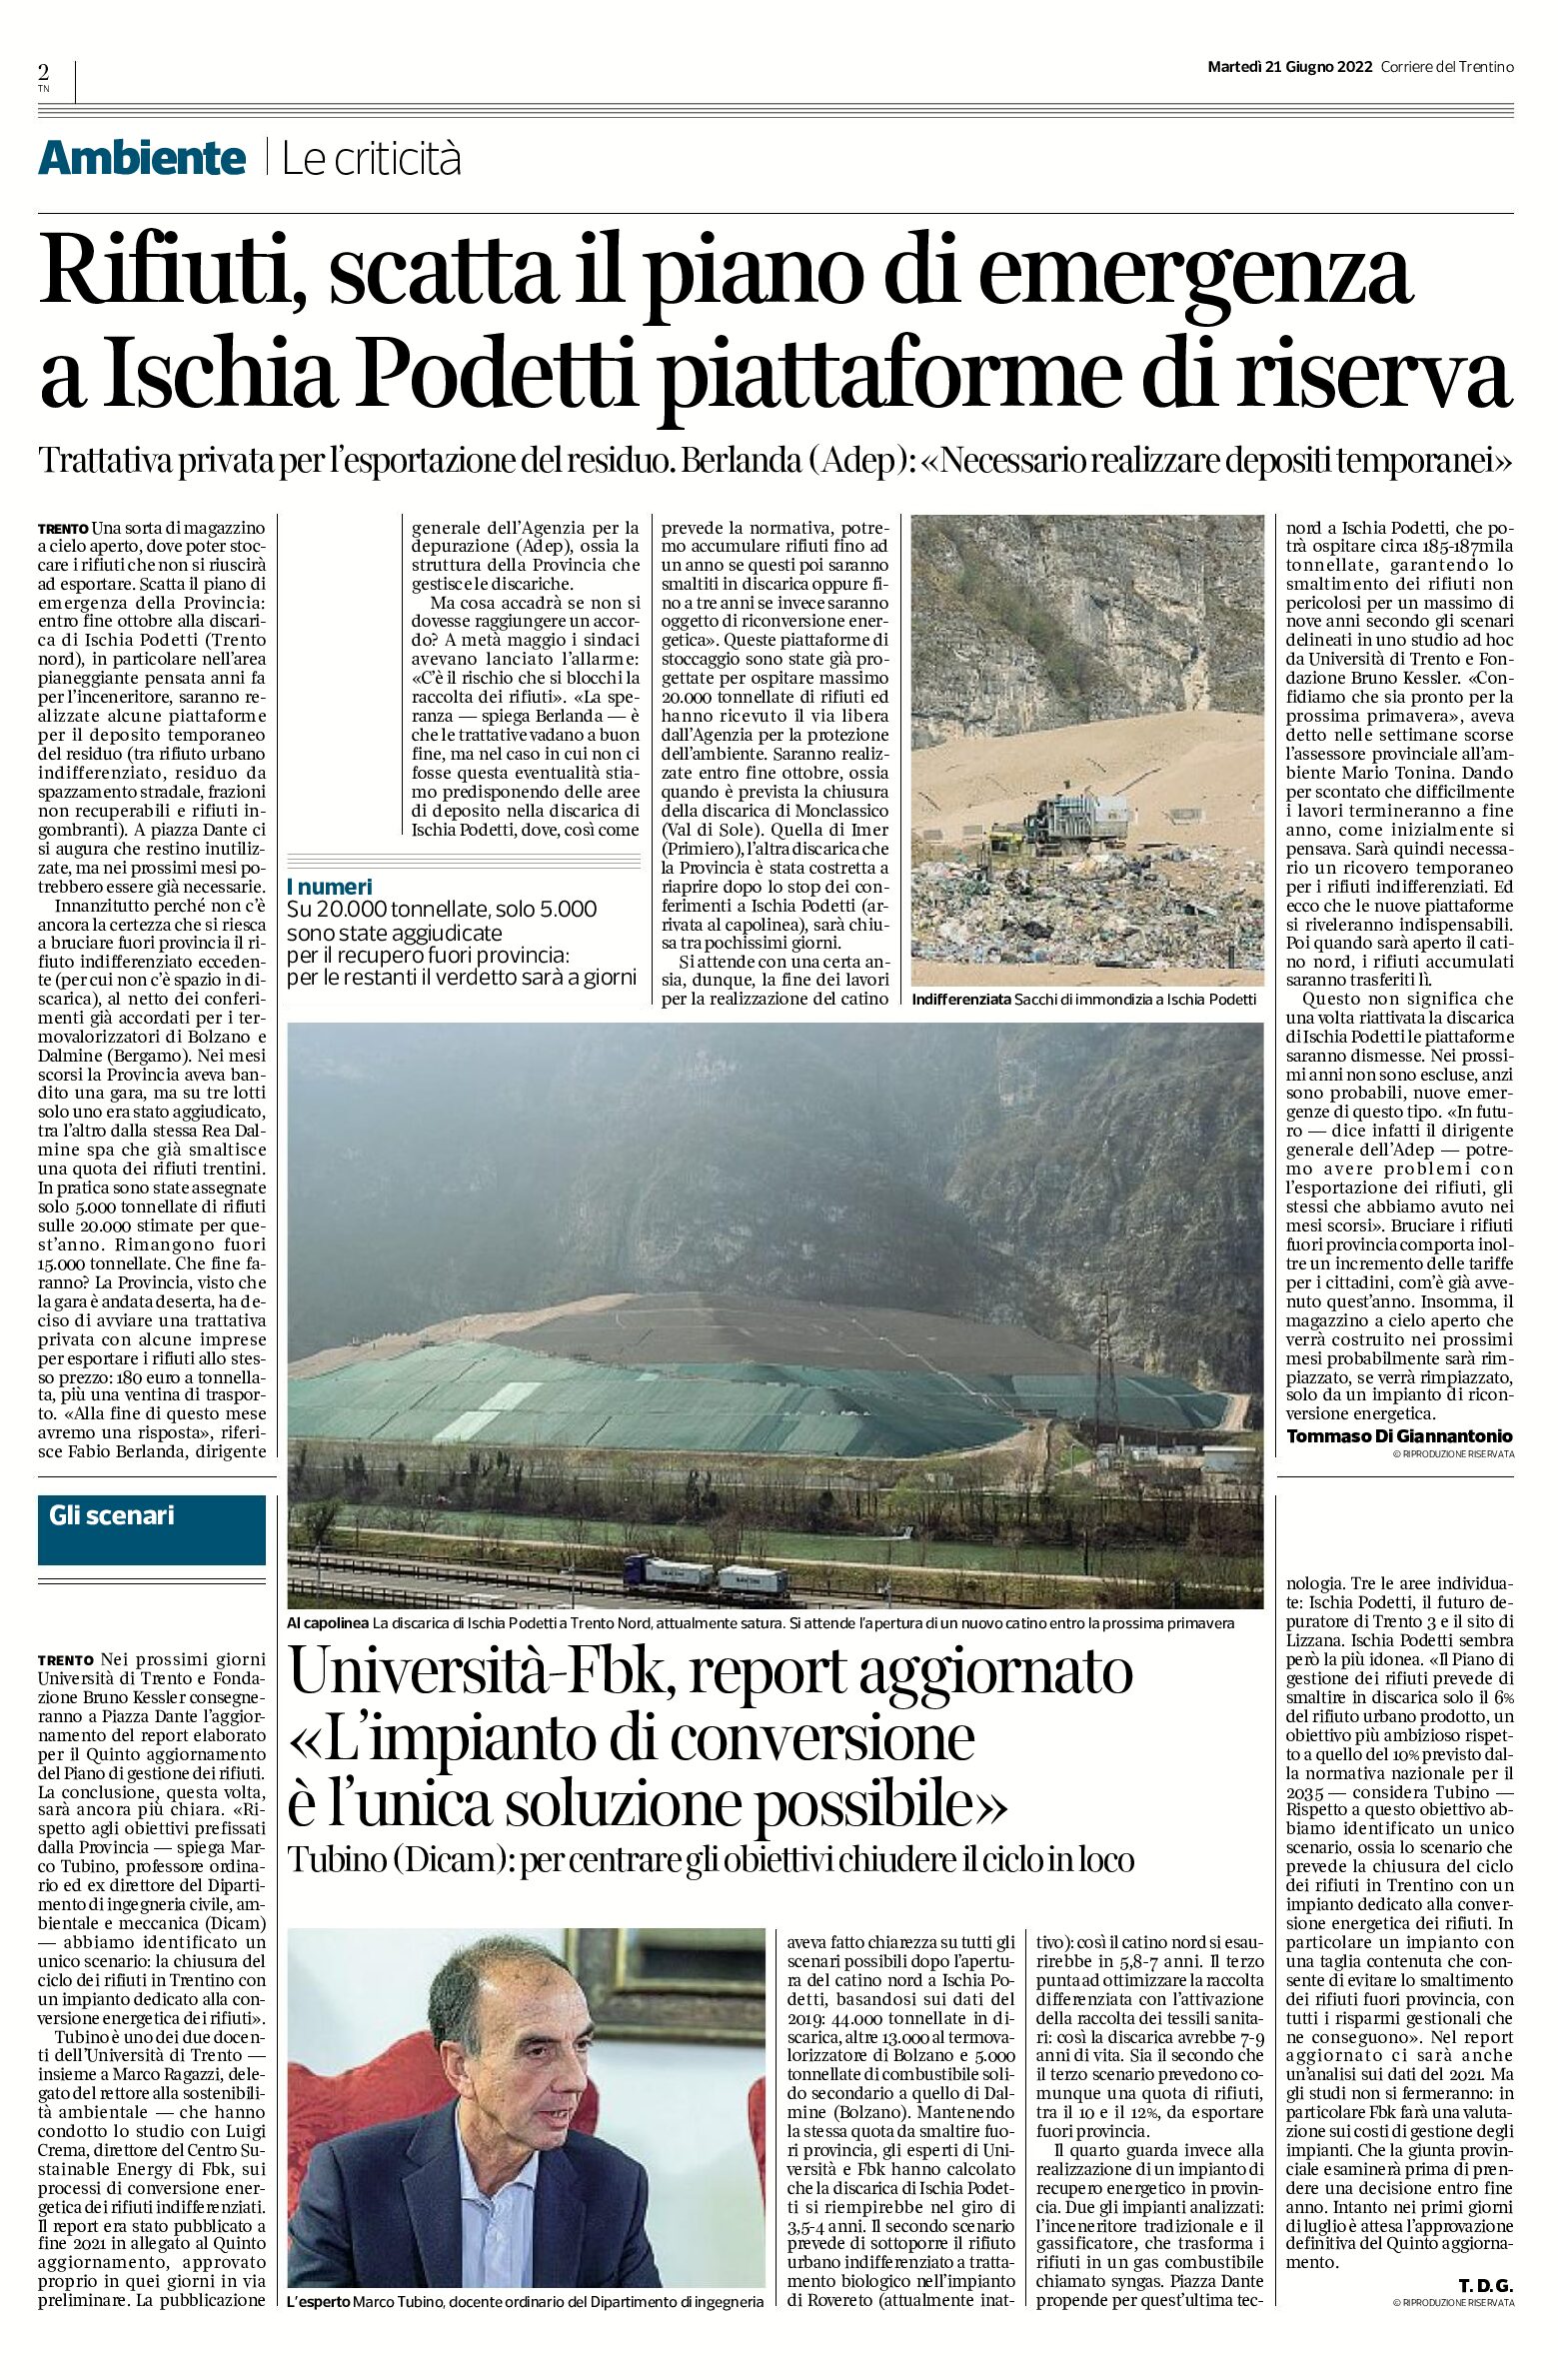 Trentino, rifiuti: scatta il piano di emergenza